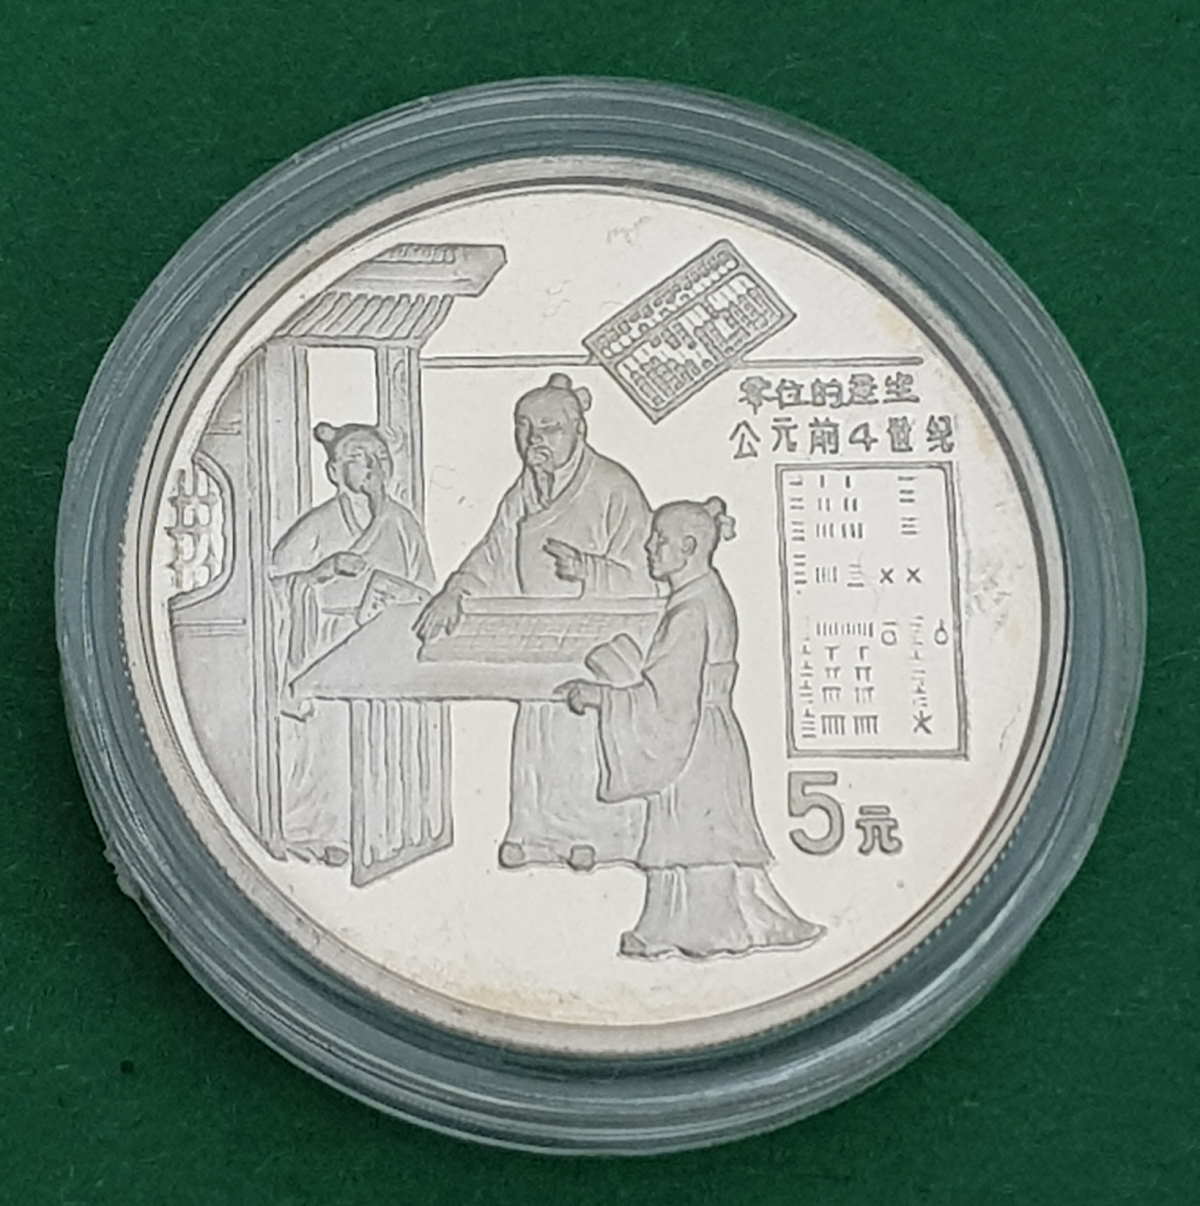 Chinesische Münze 1993 (Vorderseite)